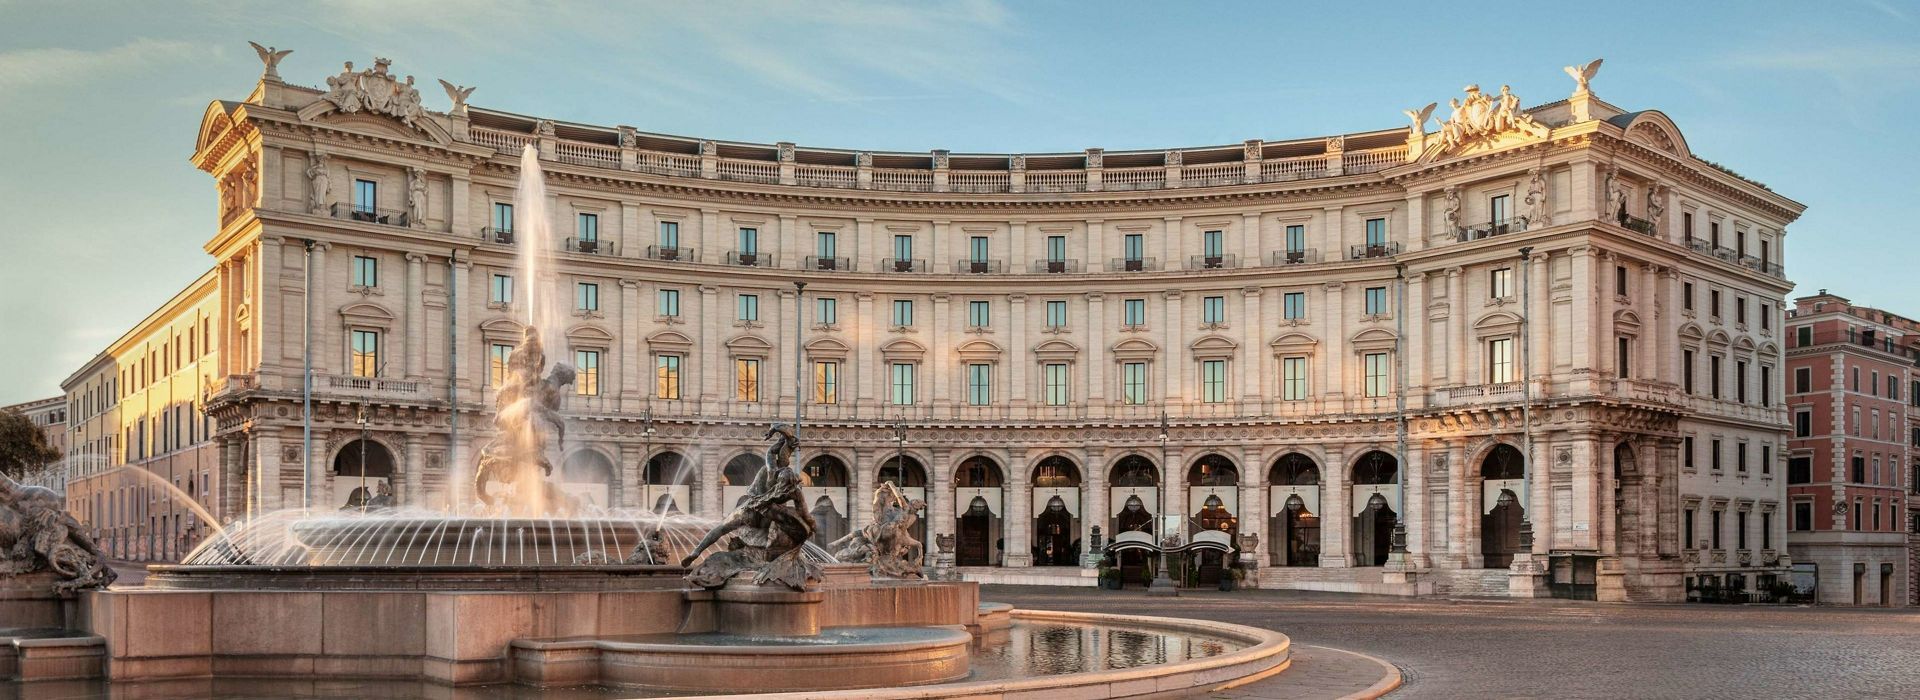 NH Anantara Palazzo Naiadi Rome-Location shots (3).jpg